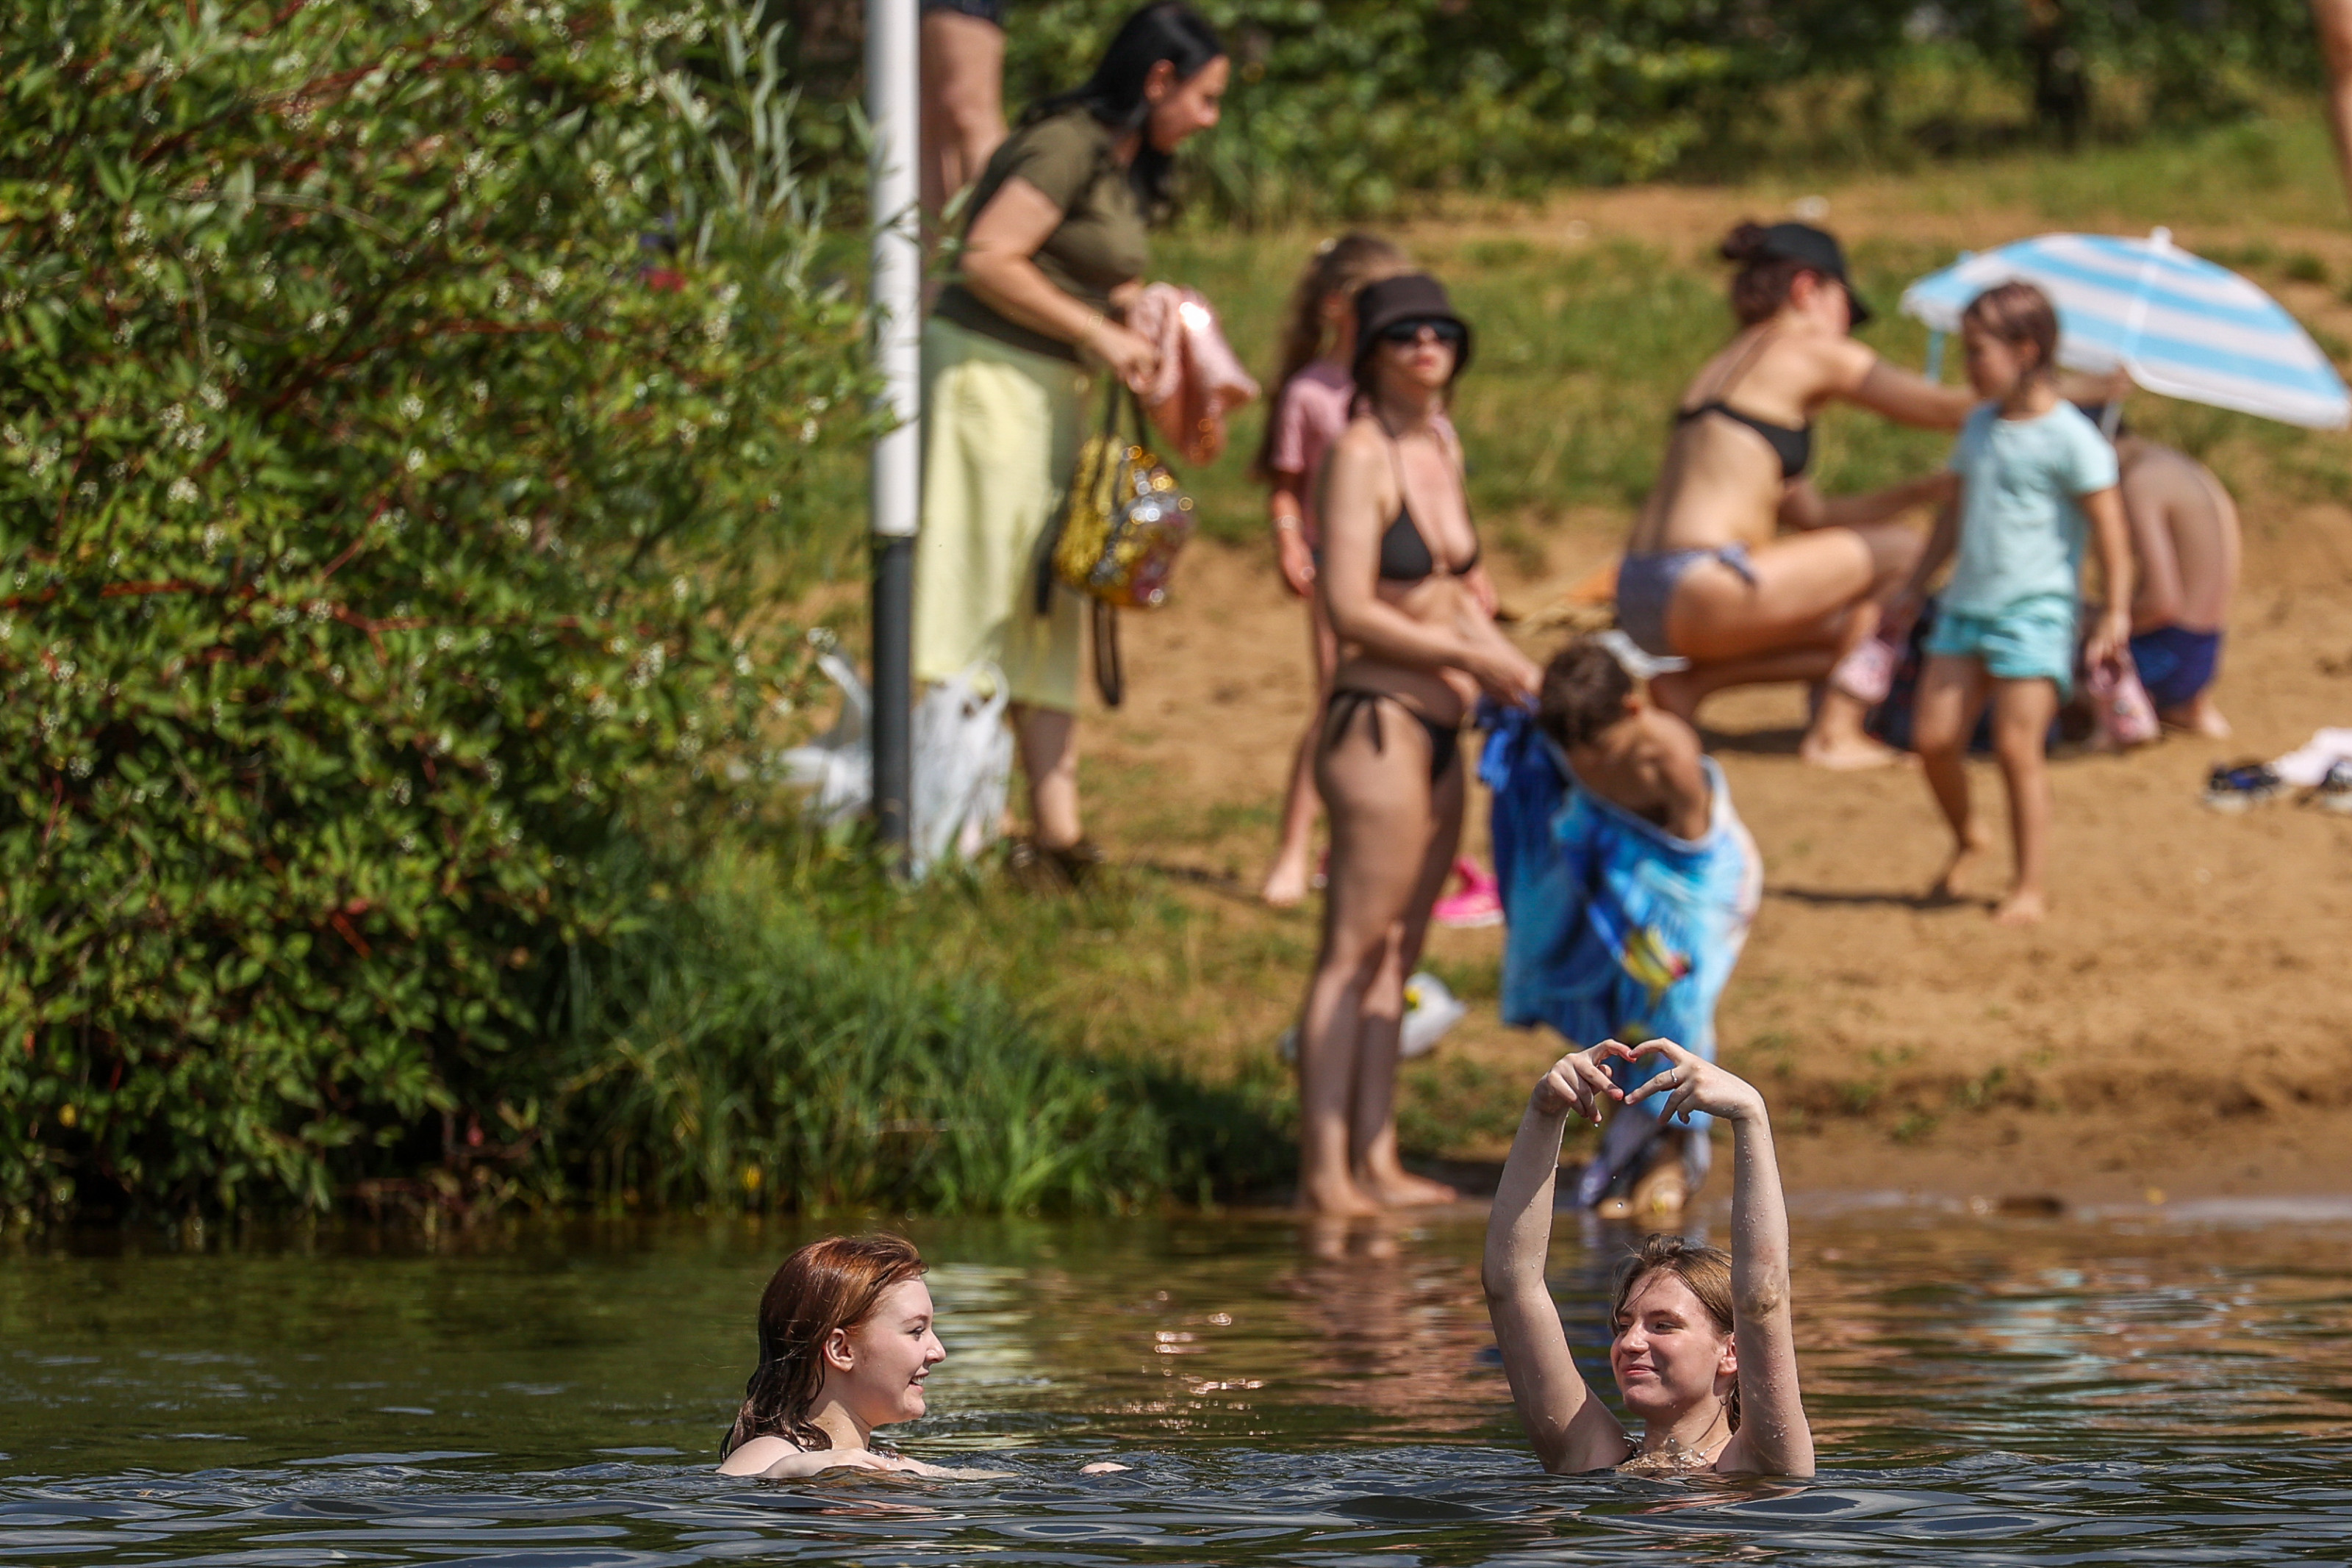 Жители Подмосковья купались в пруду рядом с телом в мешке